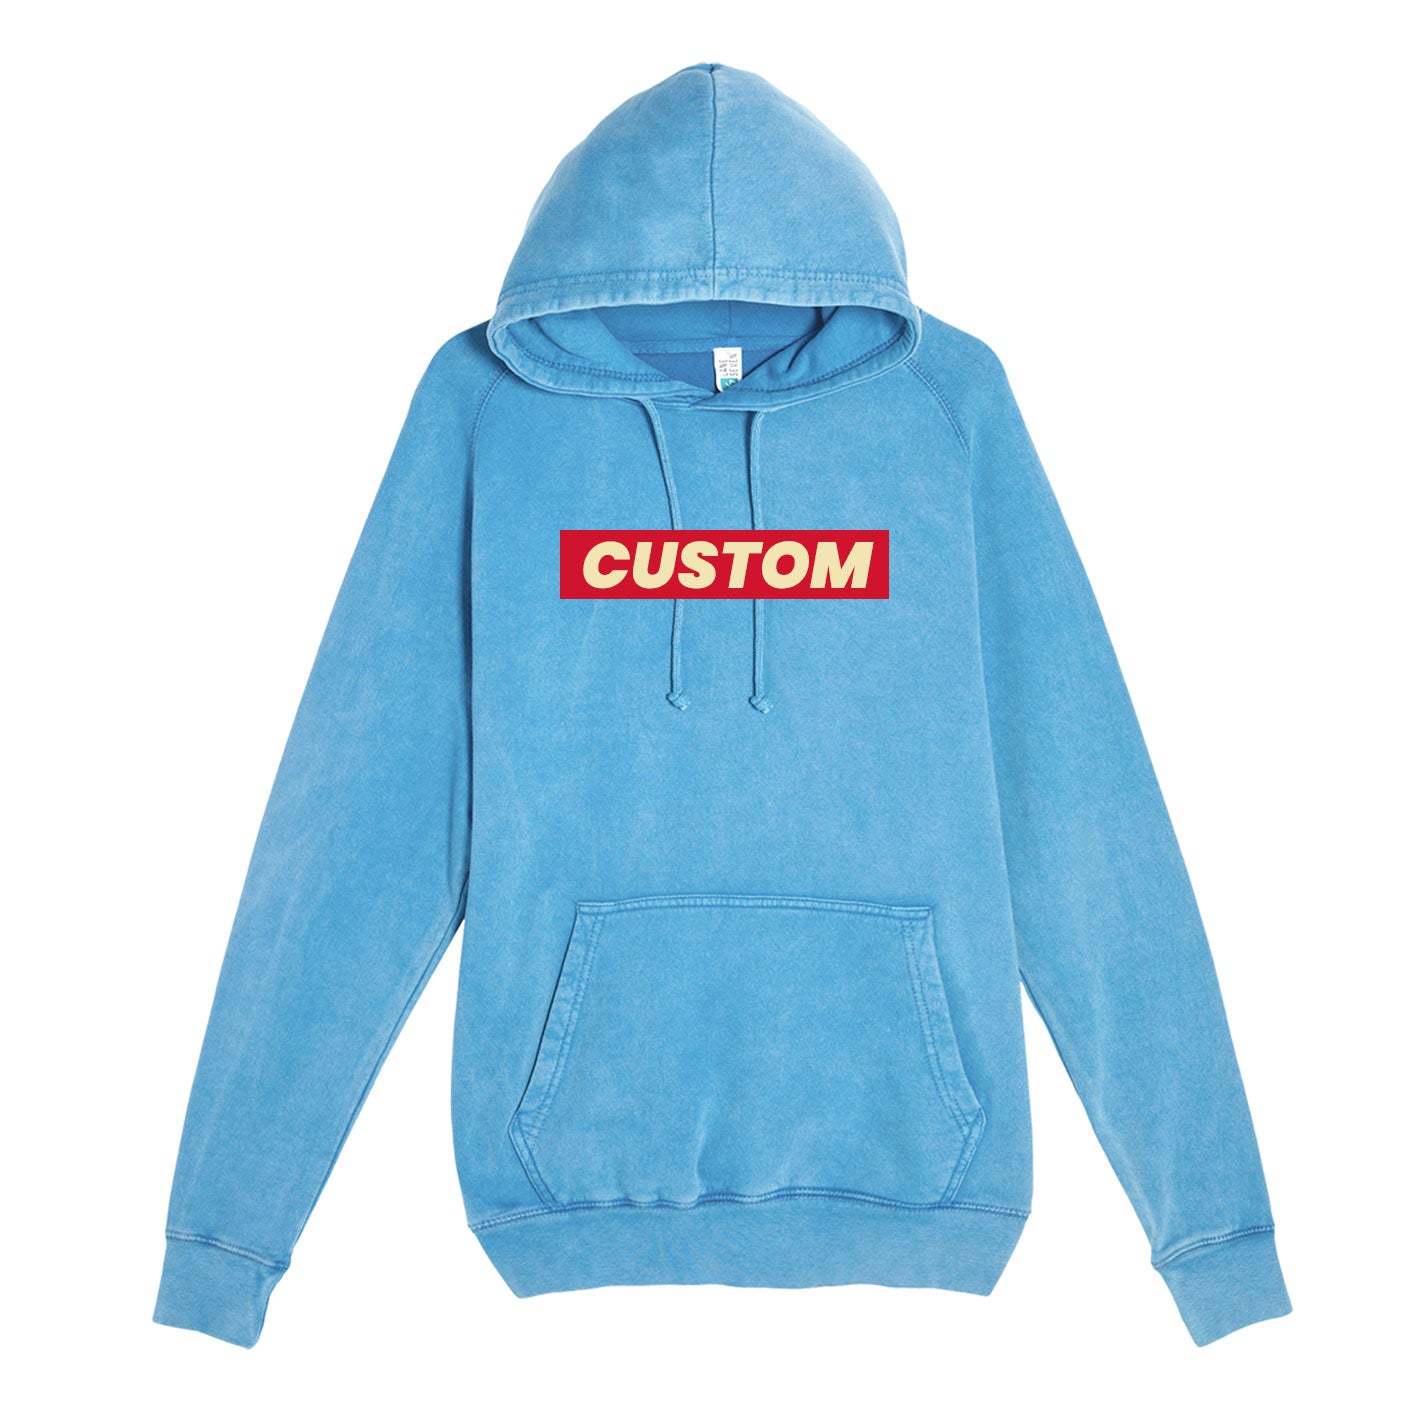 custom vintage hoodies in teal